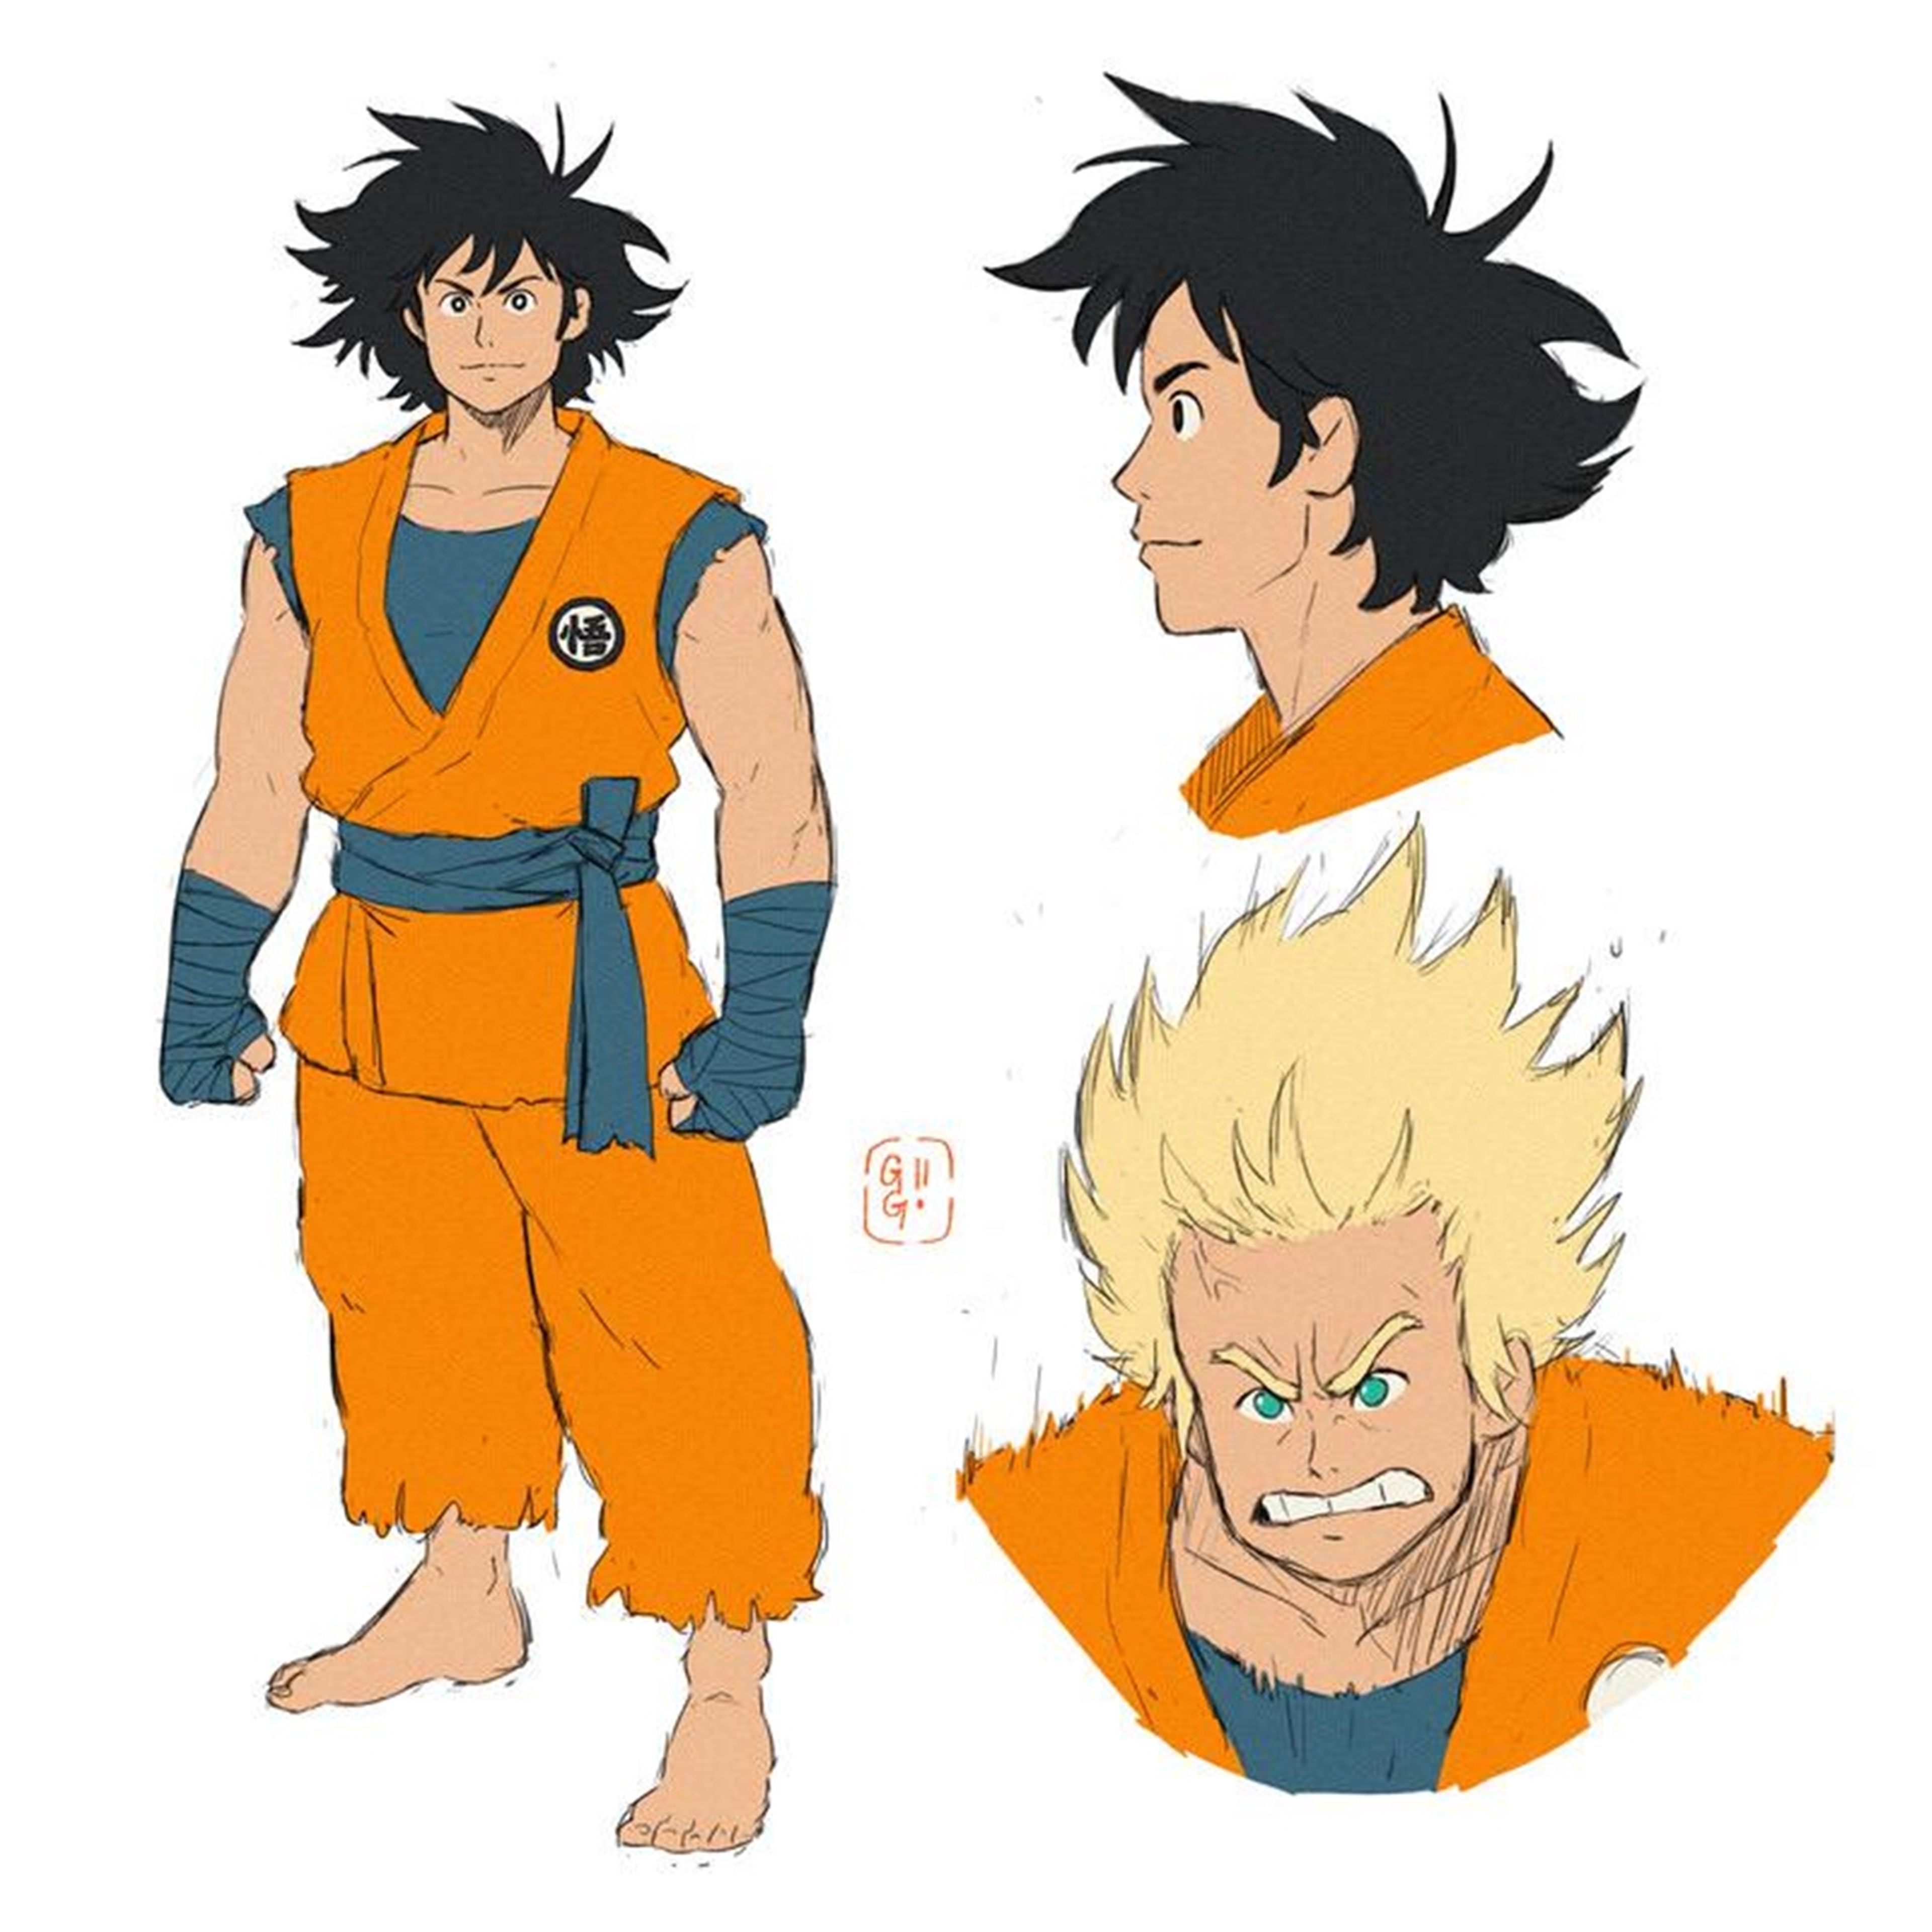 Fan art de Son Goku con el estilo de Studio Ghibli